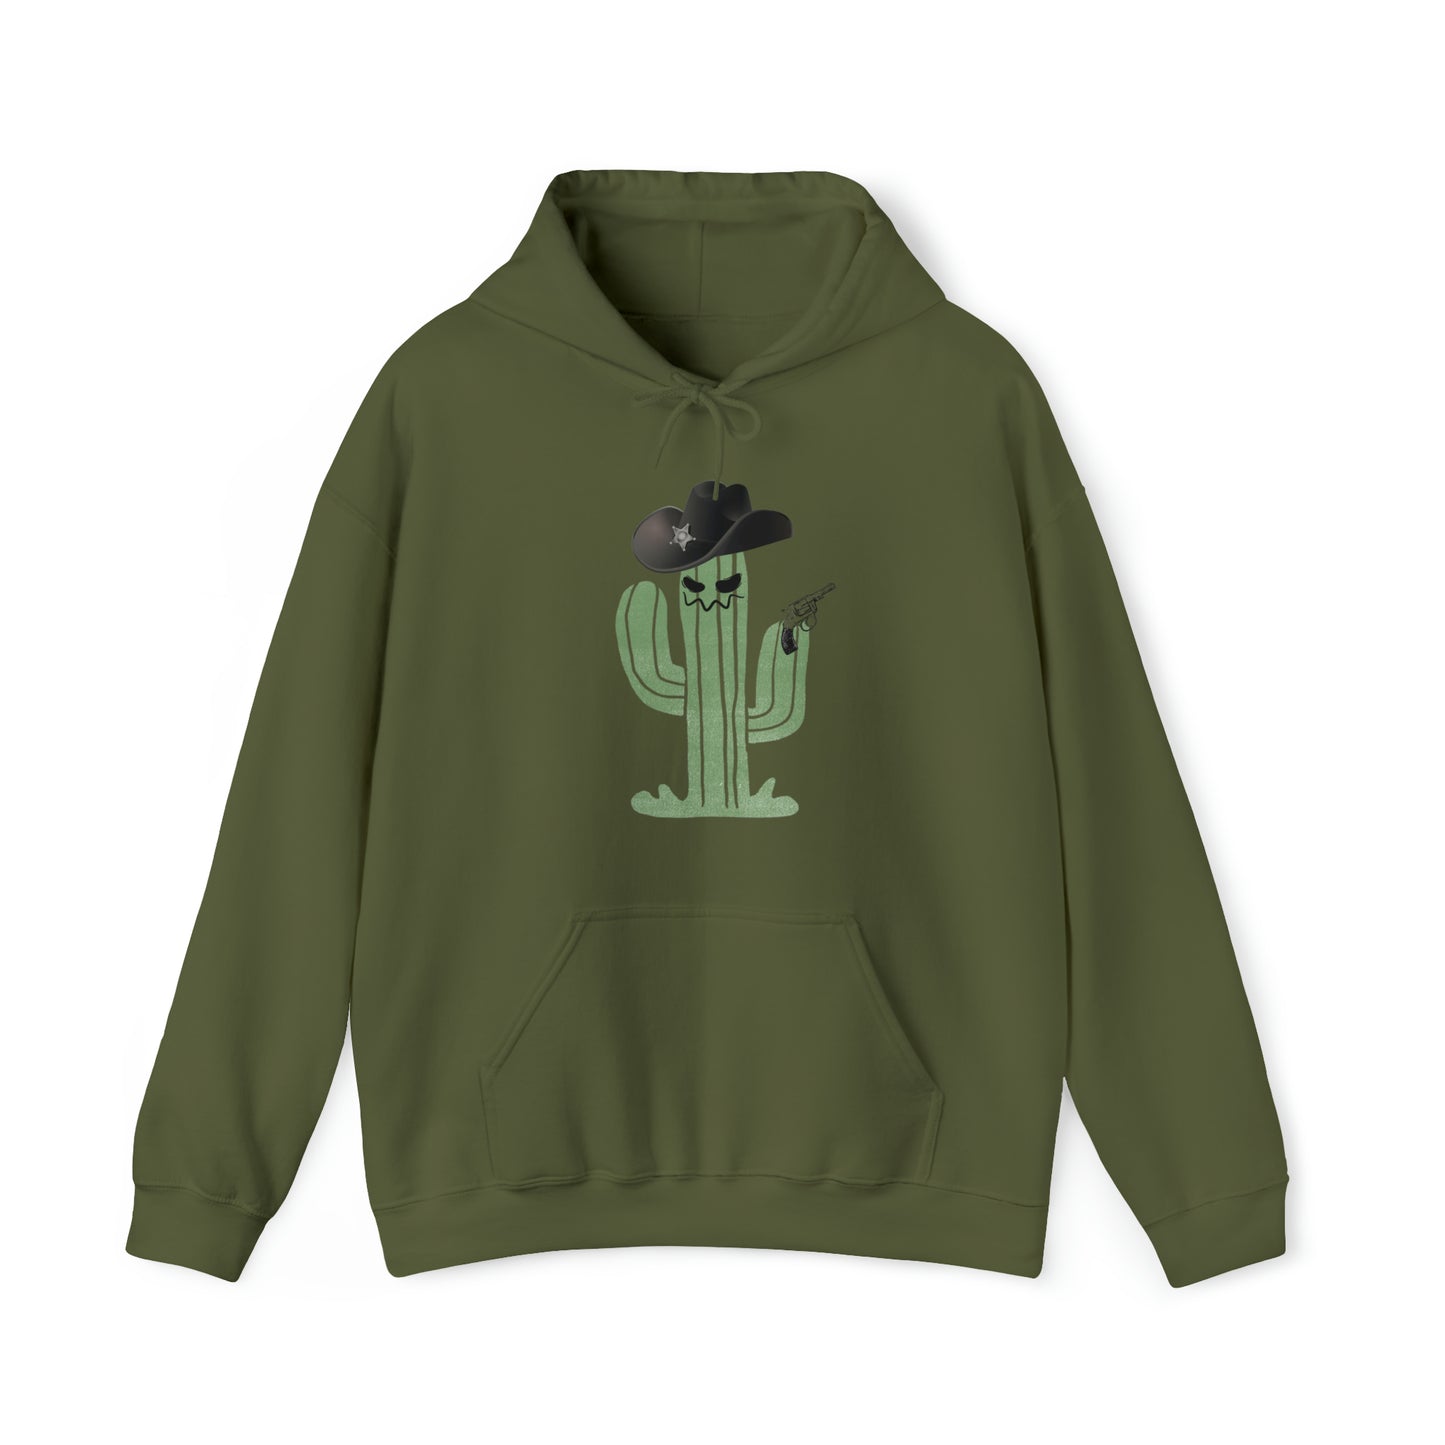 Unisex Heavy Blend Hooded Sweatshirt Cowboy Cactus Graphic Hoodie Halloween Shirt Western Funny Men's Fall Winter Hoodie